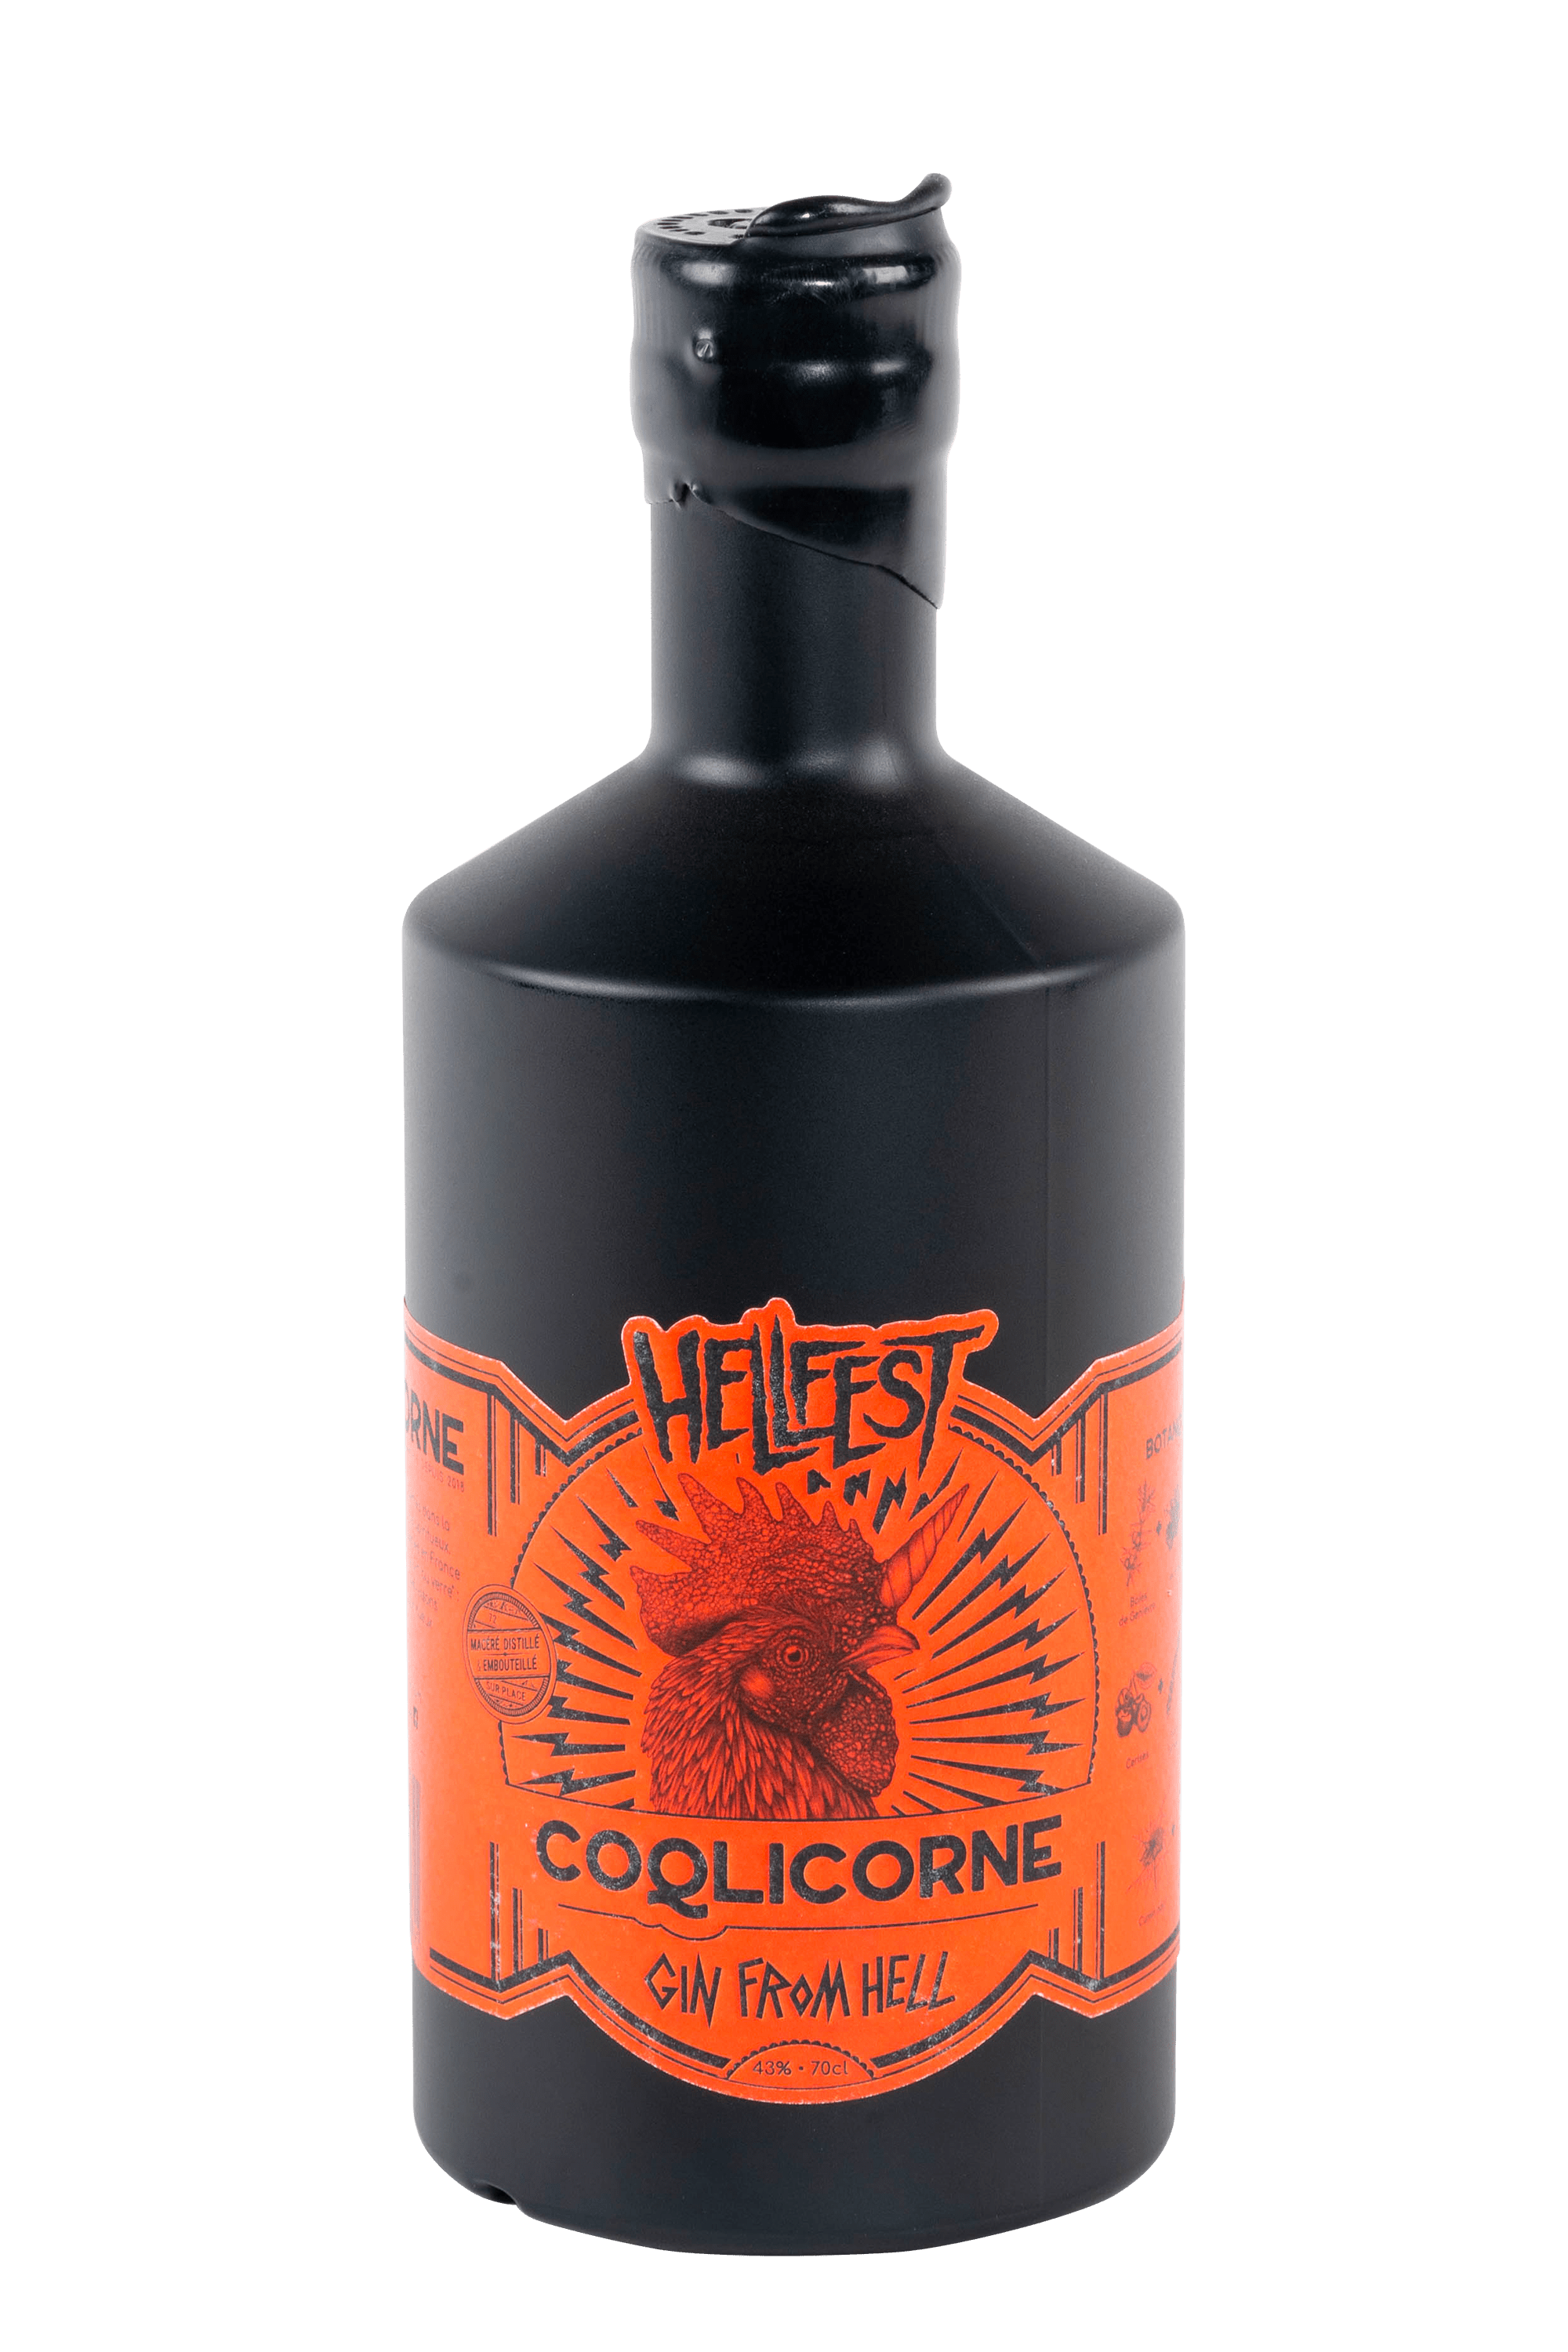 Bouteille de Gin from Hell du Hellfest distillerie coqlicorne